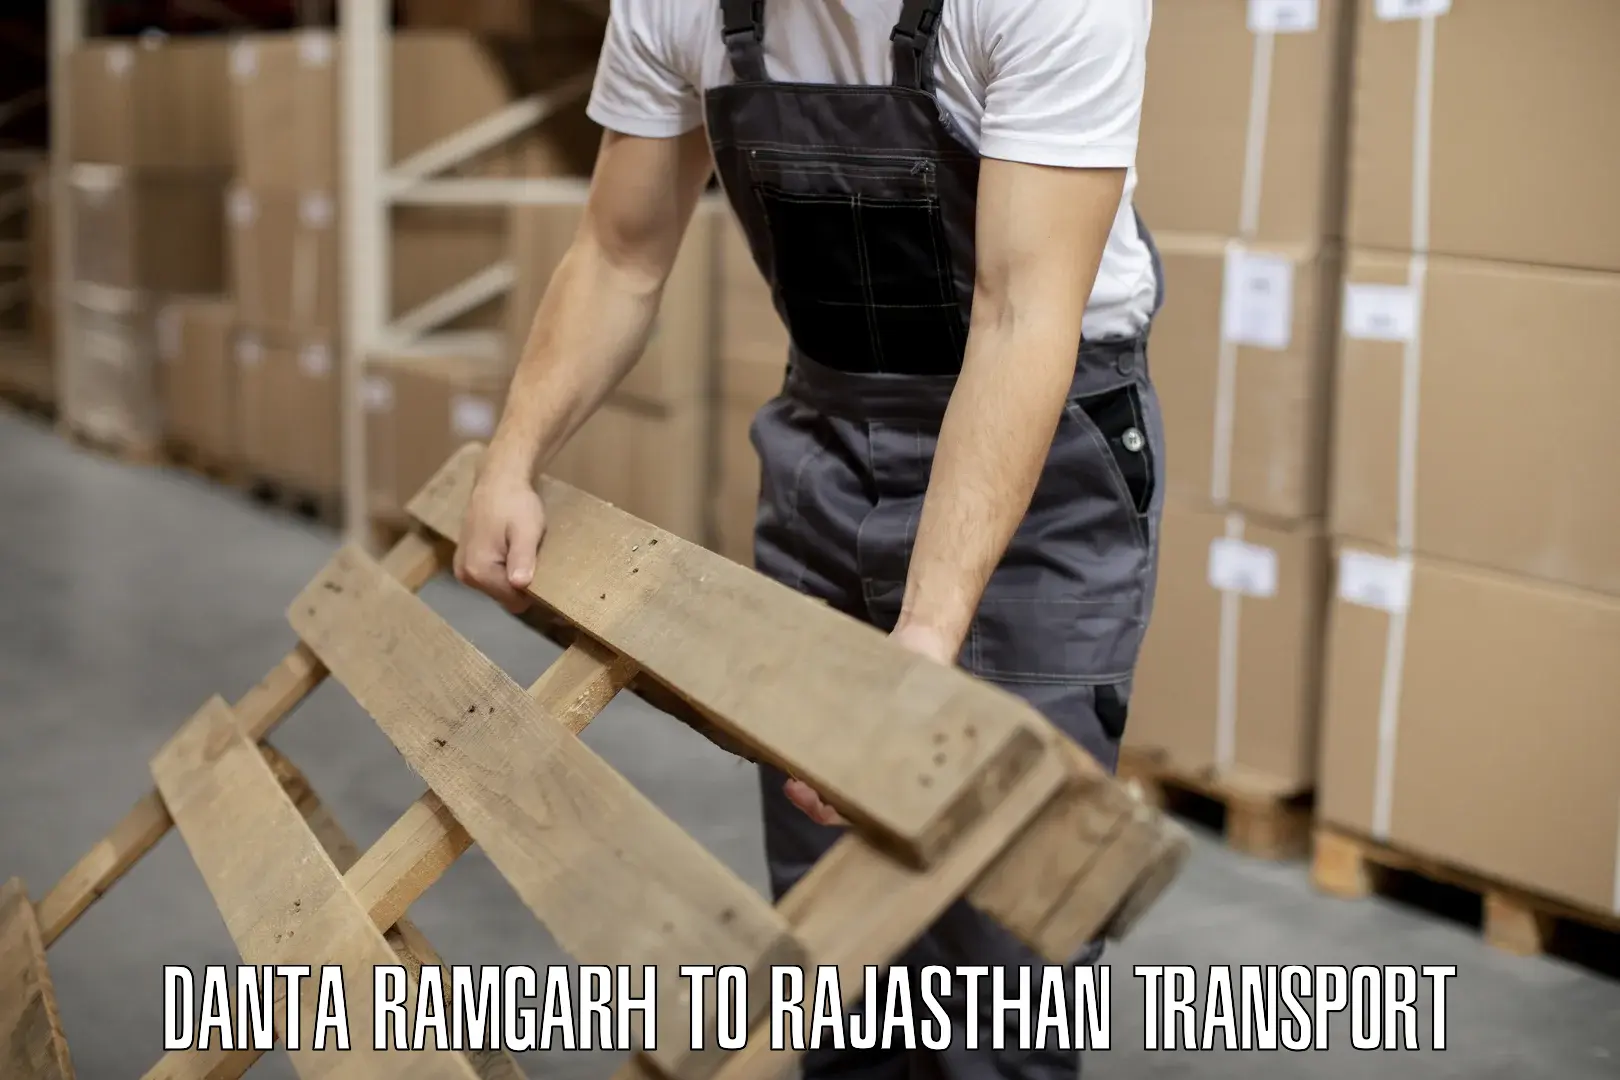 Land transport services in Danta Ramgarh to Pratapgarh Rajasthan